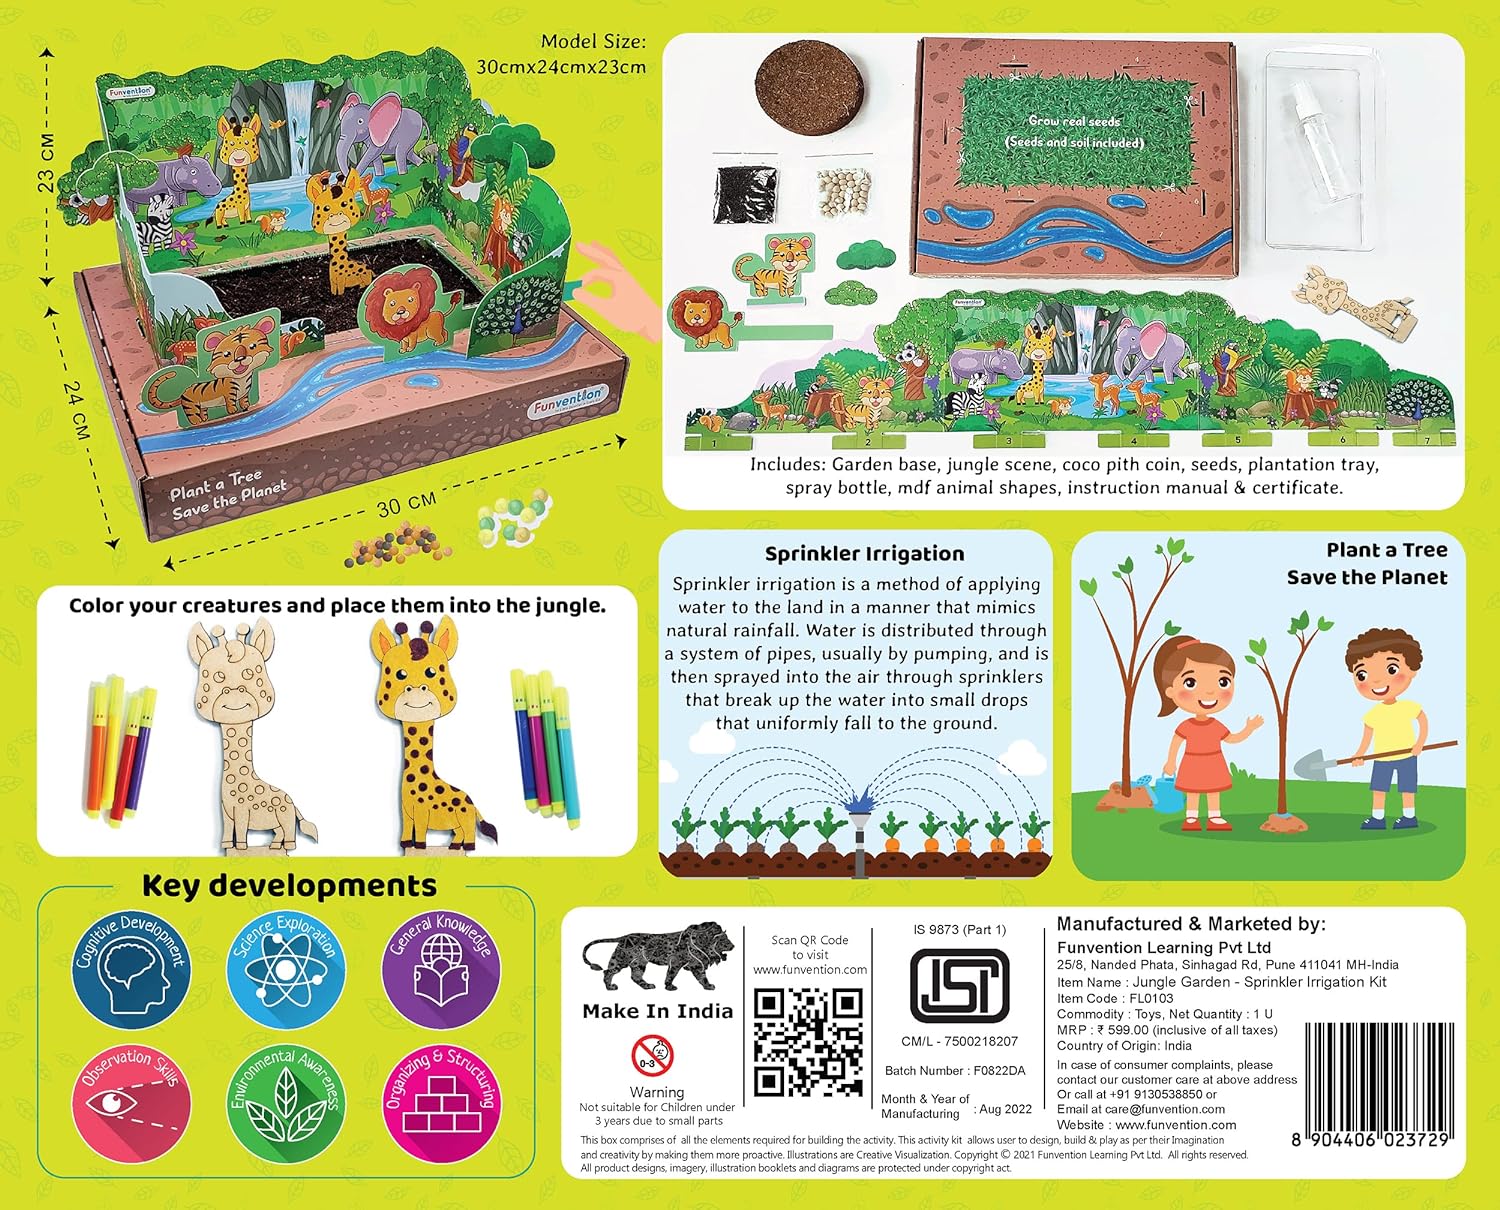 Funvention Jungle Garden Sprinkler Irrigation DIY STEM Learning Kit for Kids